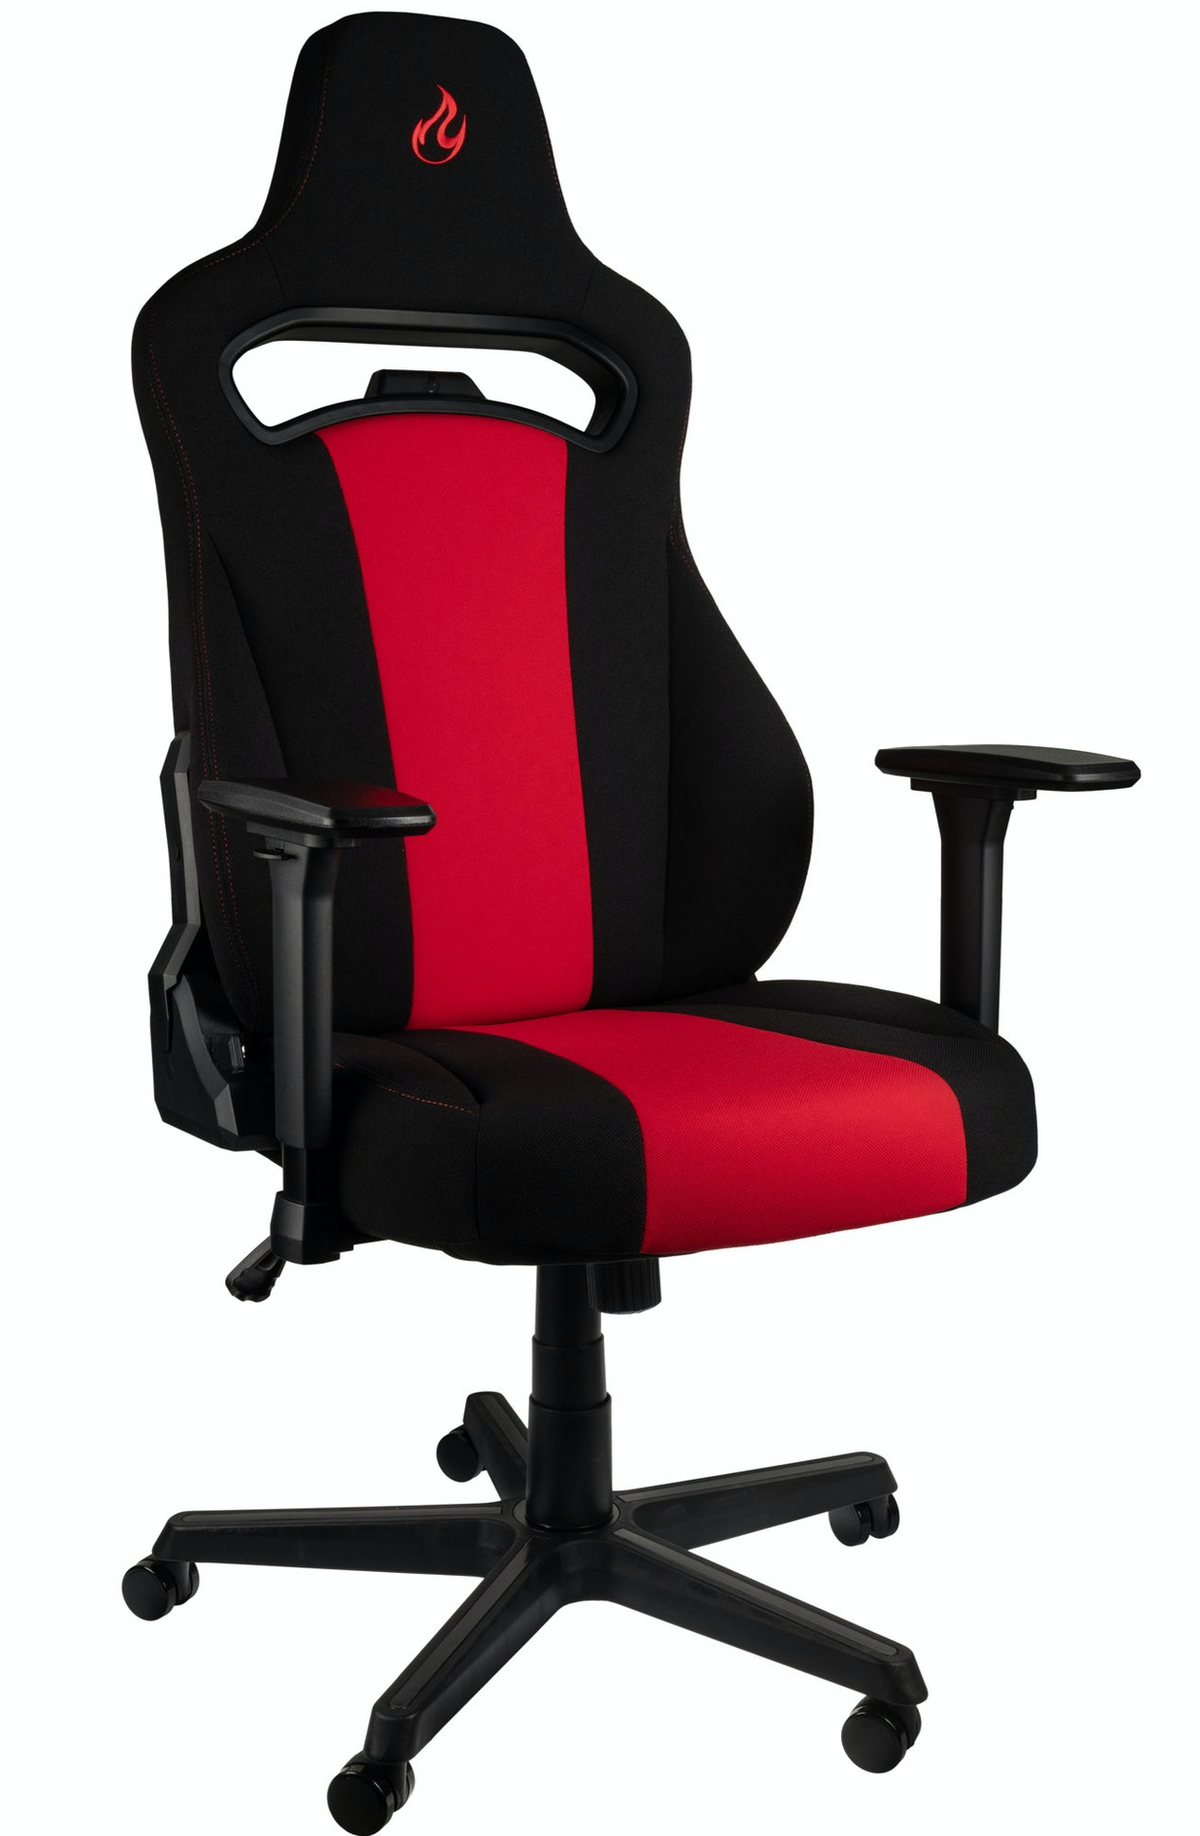 Nitro Concepts E250 szövet gamer szék